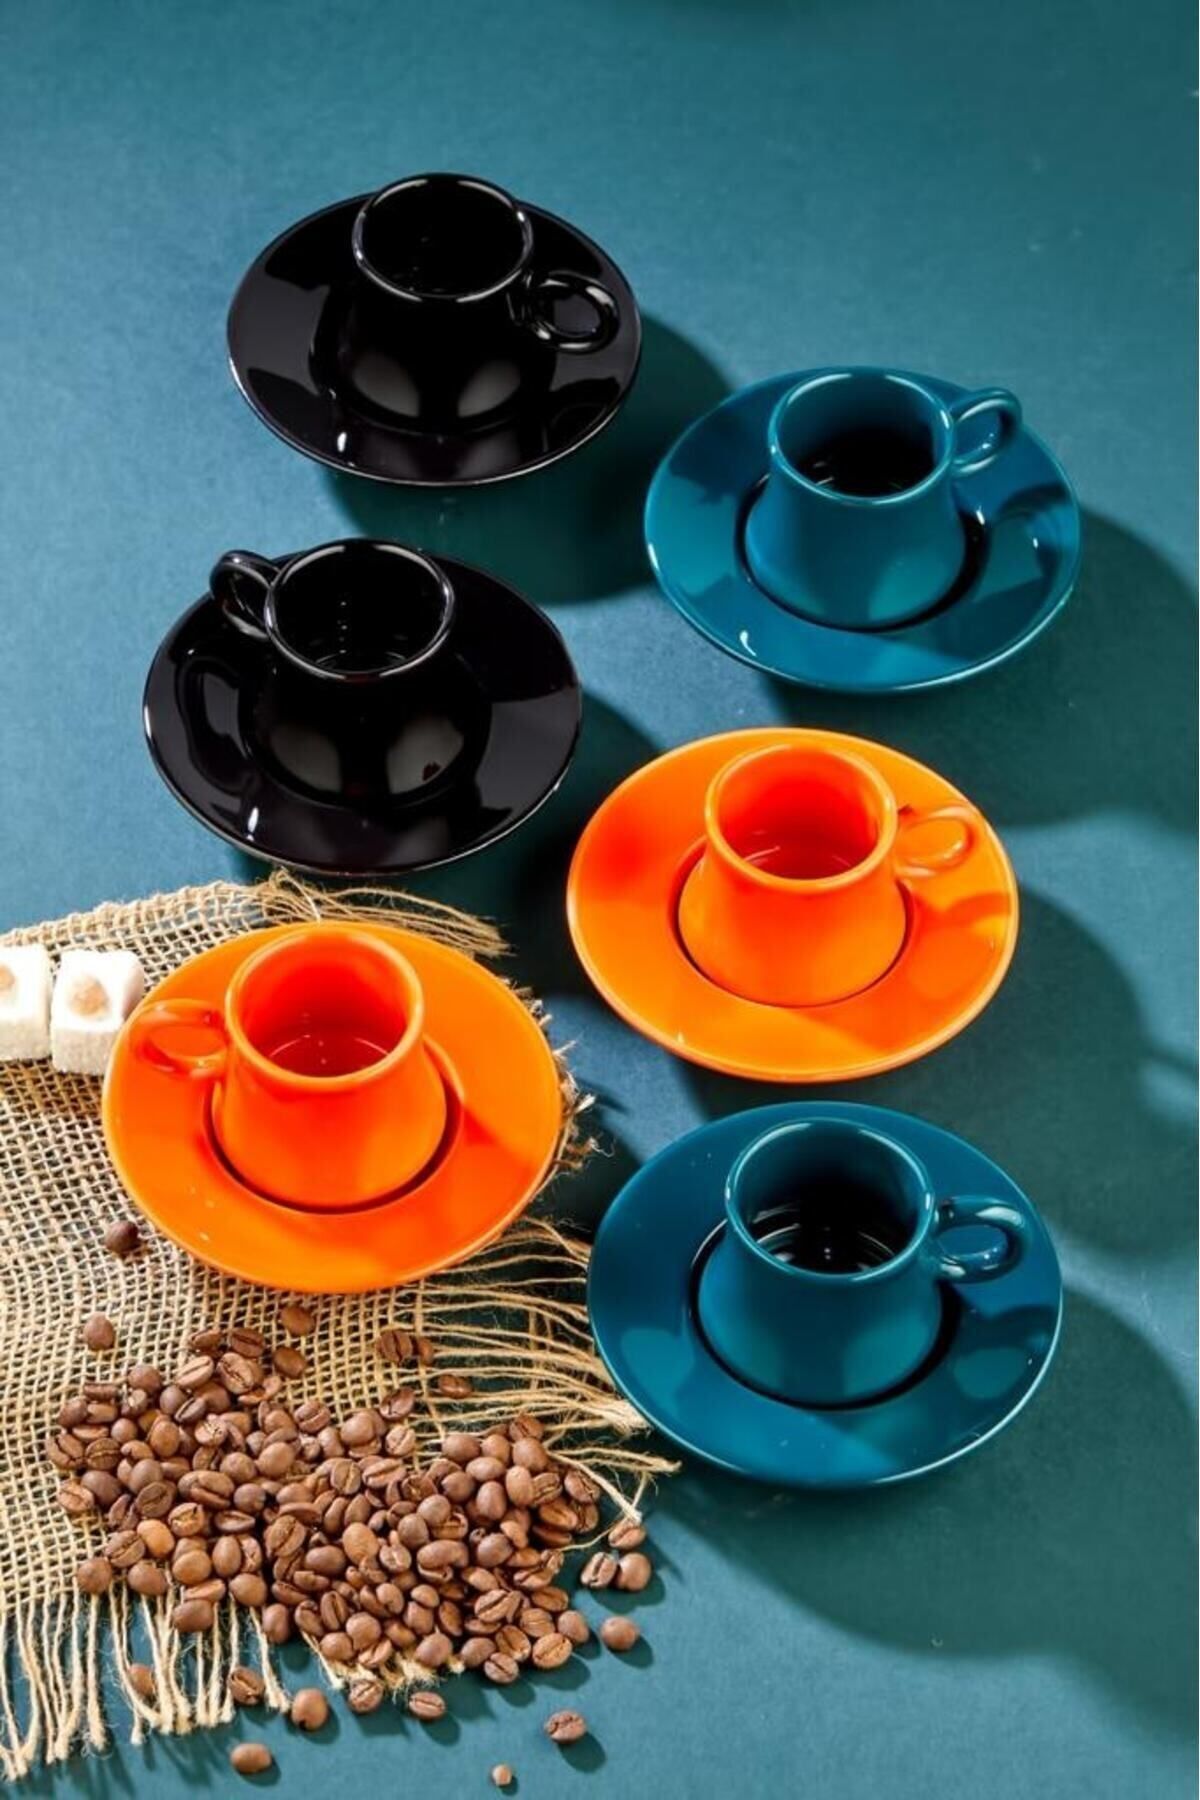 EvimSepette 6 Adet Renkli Kahve Fincanı Ve Tabağı